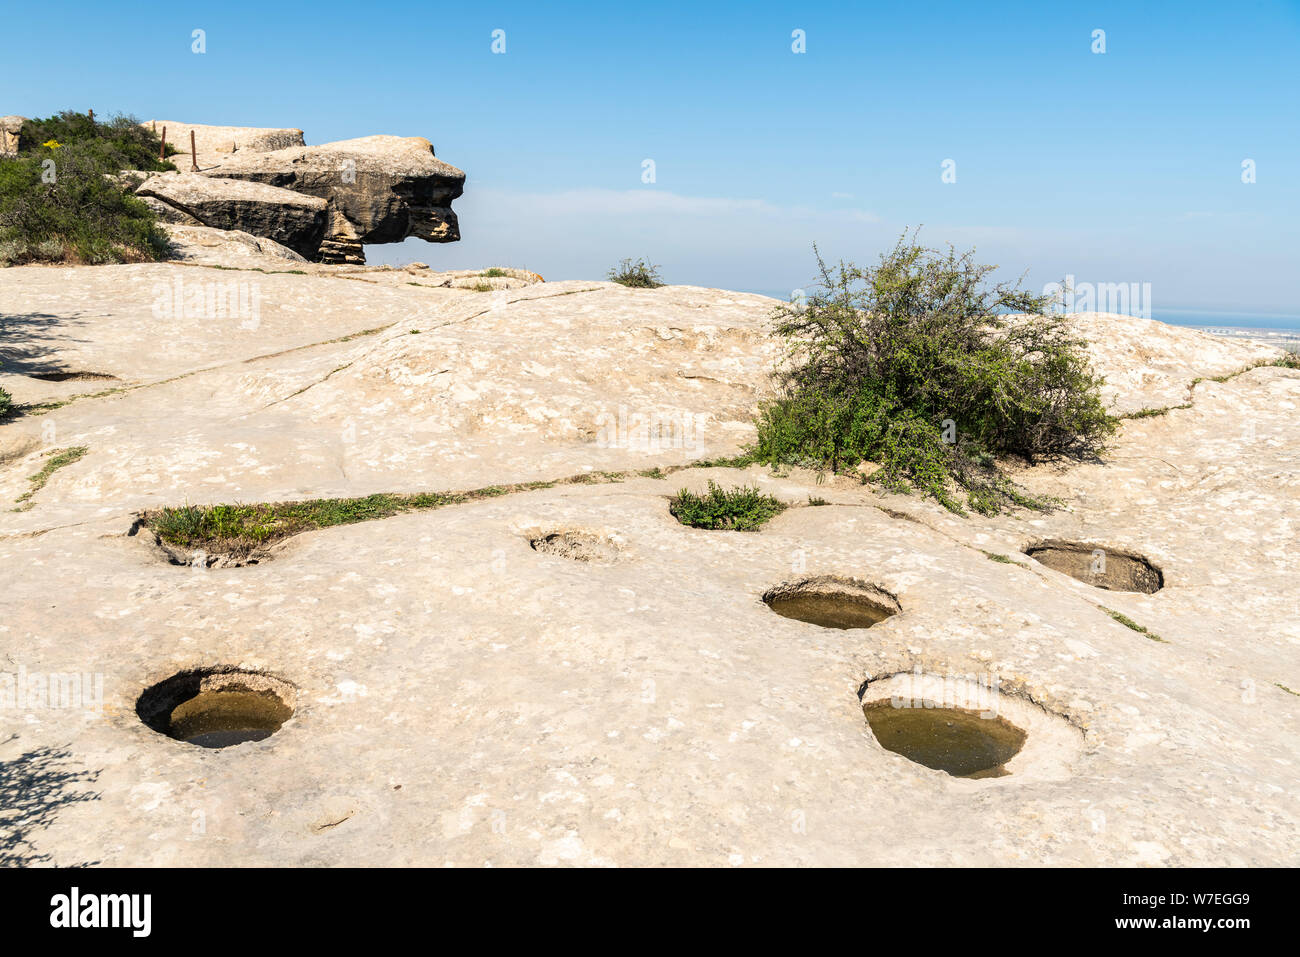 Agujeros de agua cortadas en la tierra rocosa en Gobustan, Azerbaiyán. Estos agujeros se considera el método más primitivo de recolección de aguas de lluvia y blo Foto de stock